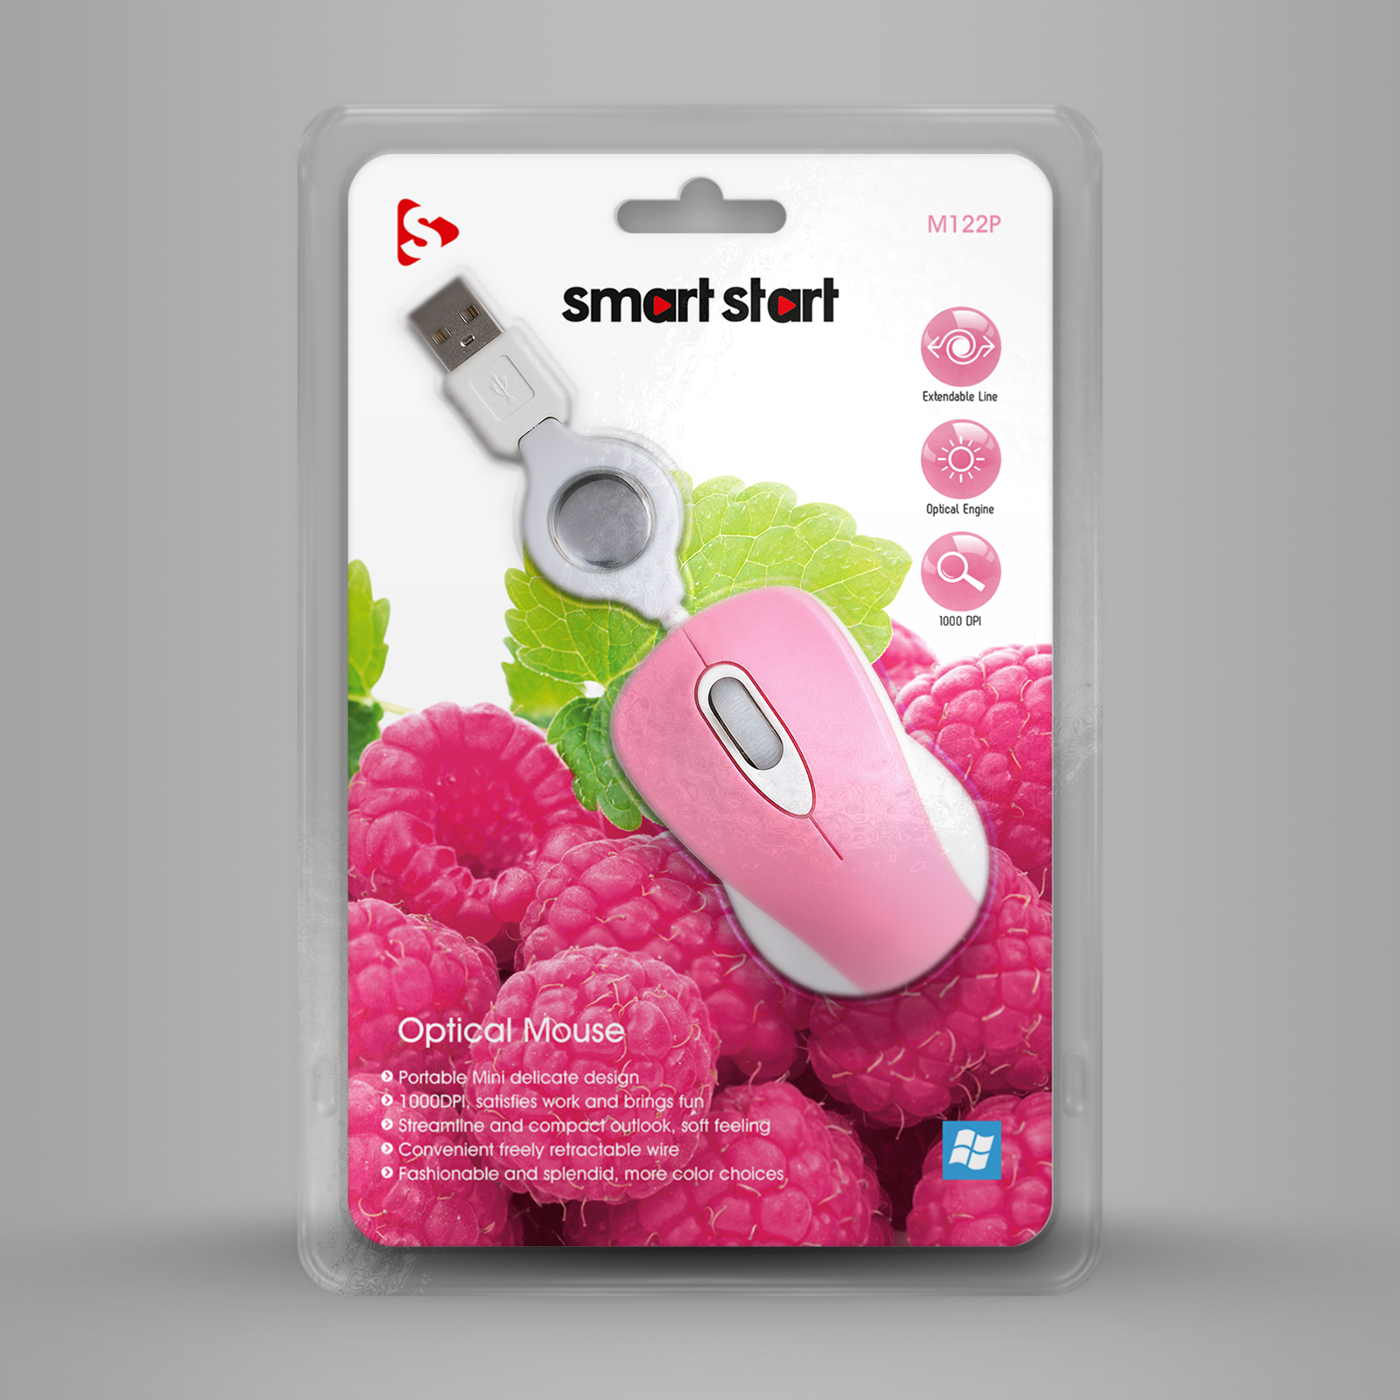 Smart Start mouse green LILA grün rosa pink Weiss Obst schwarz